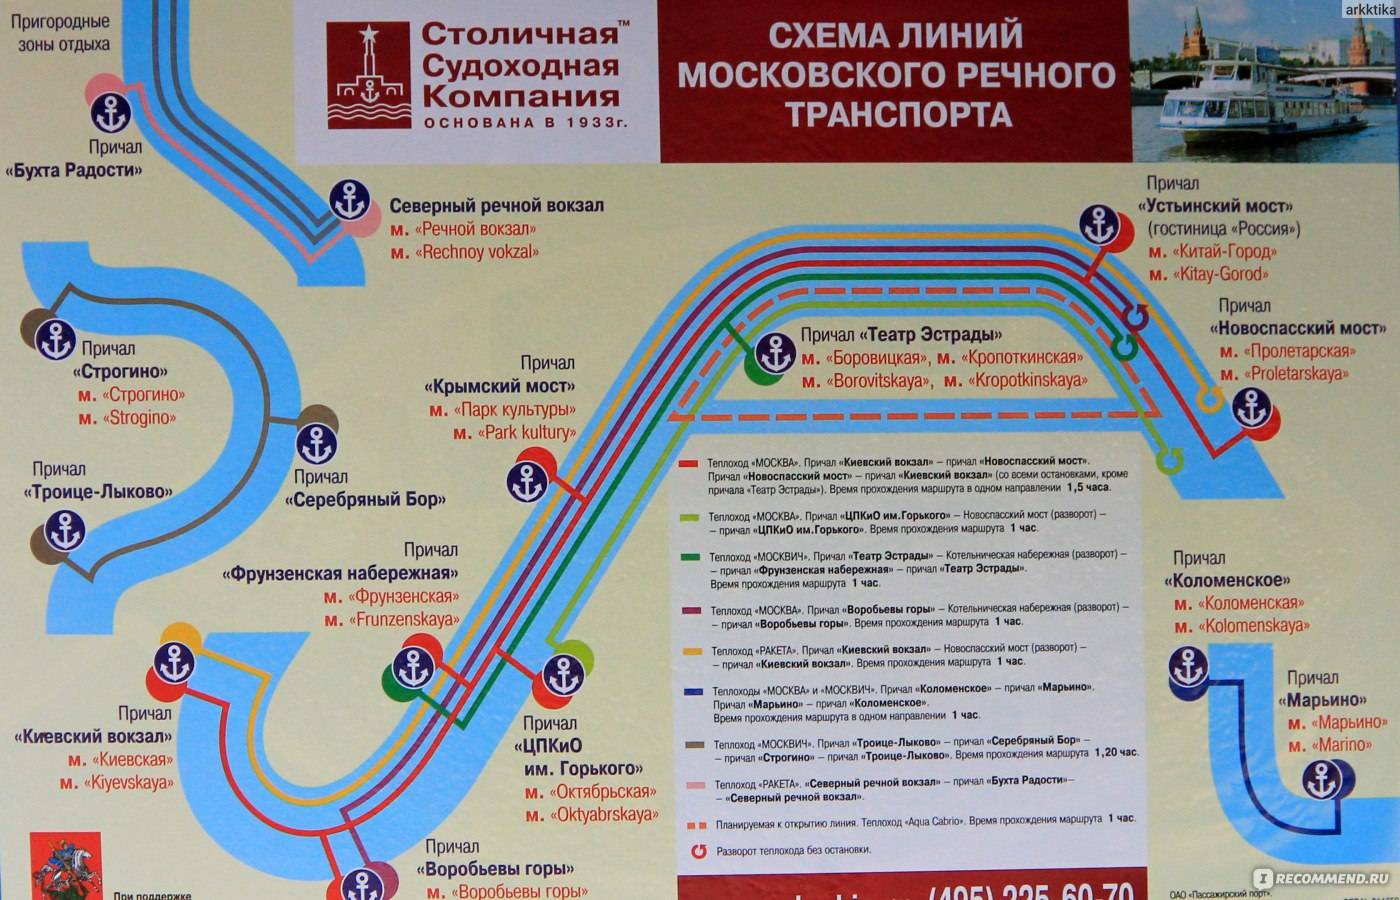 Прогулки на теплоходе по москве-реке с ужином: расписание, маршруты